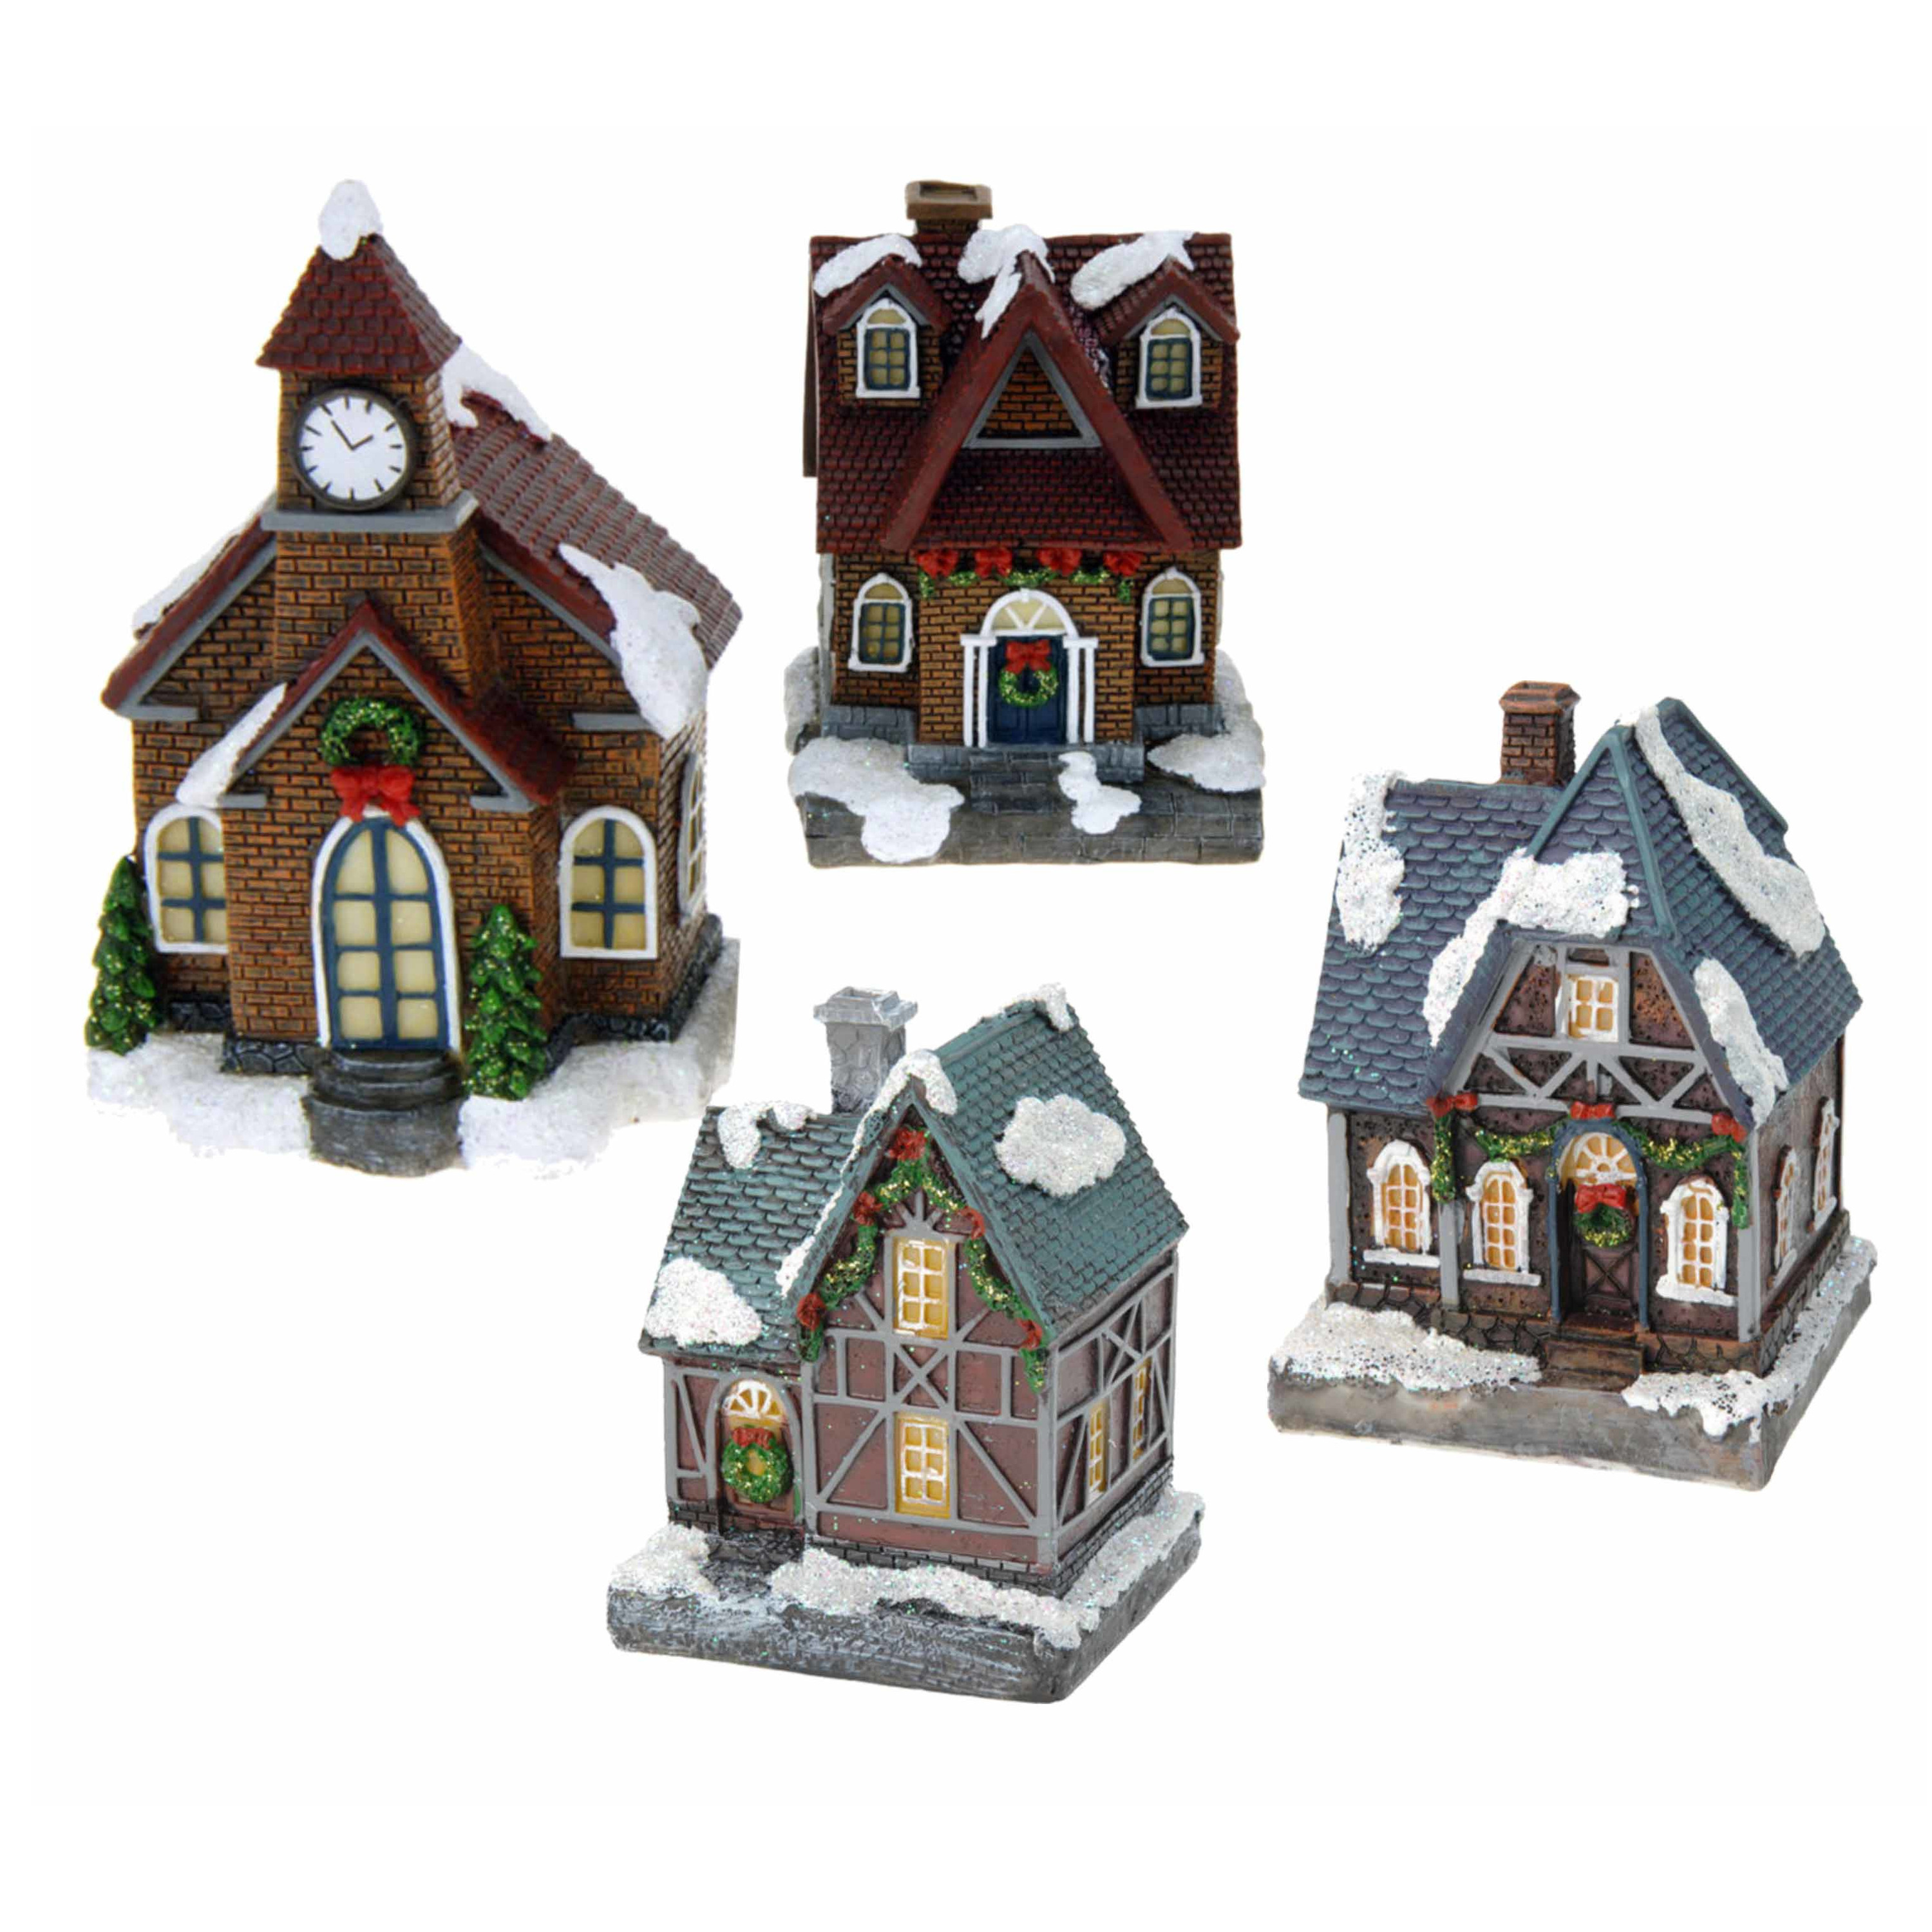 Kerstdorp huisjes set van 4x huisjes met Led verlichting 13.5 cm